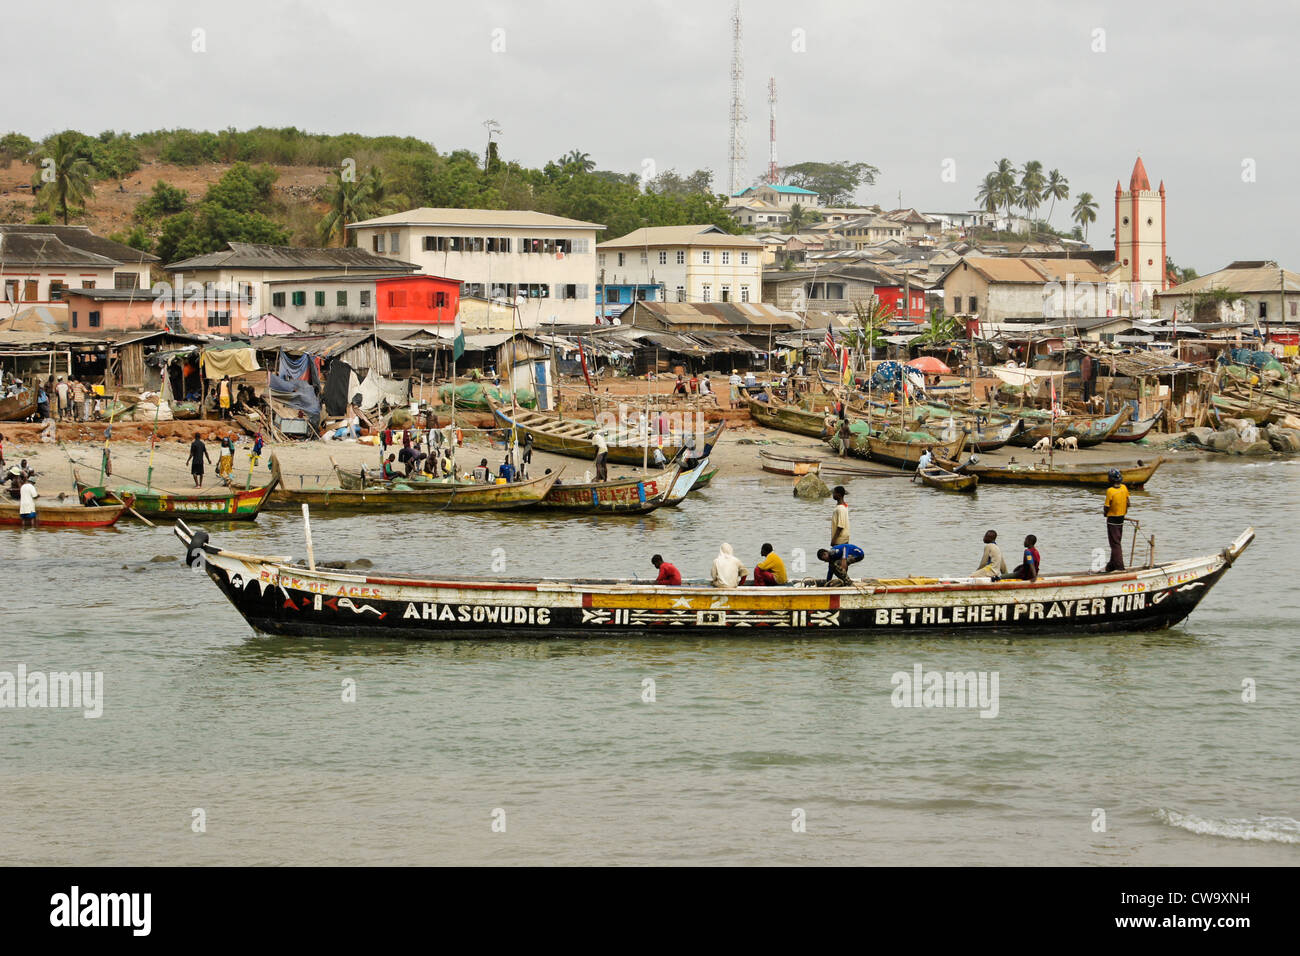 Fishing boats in harbor, Elmina, Ghana Stock Photo